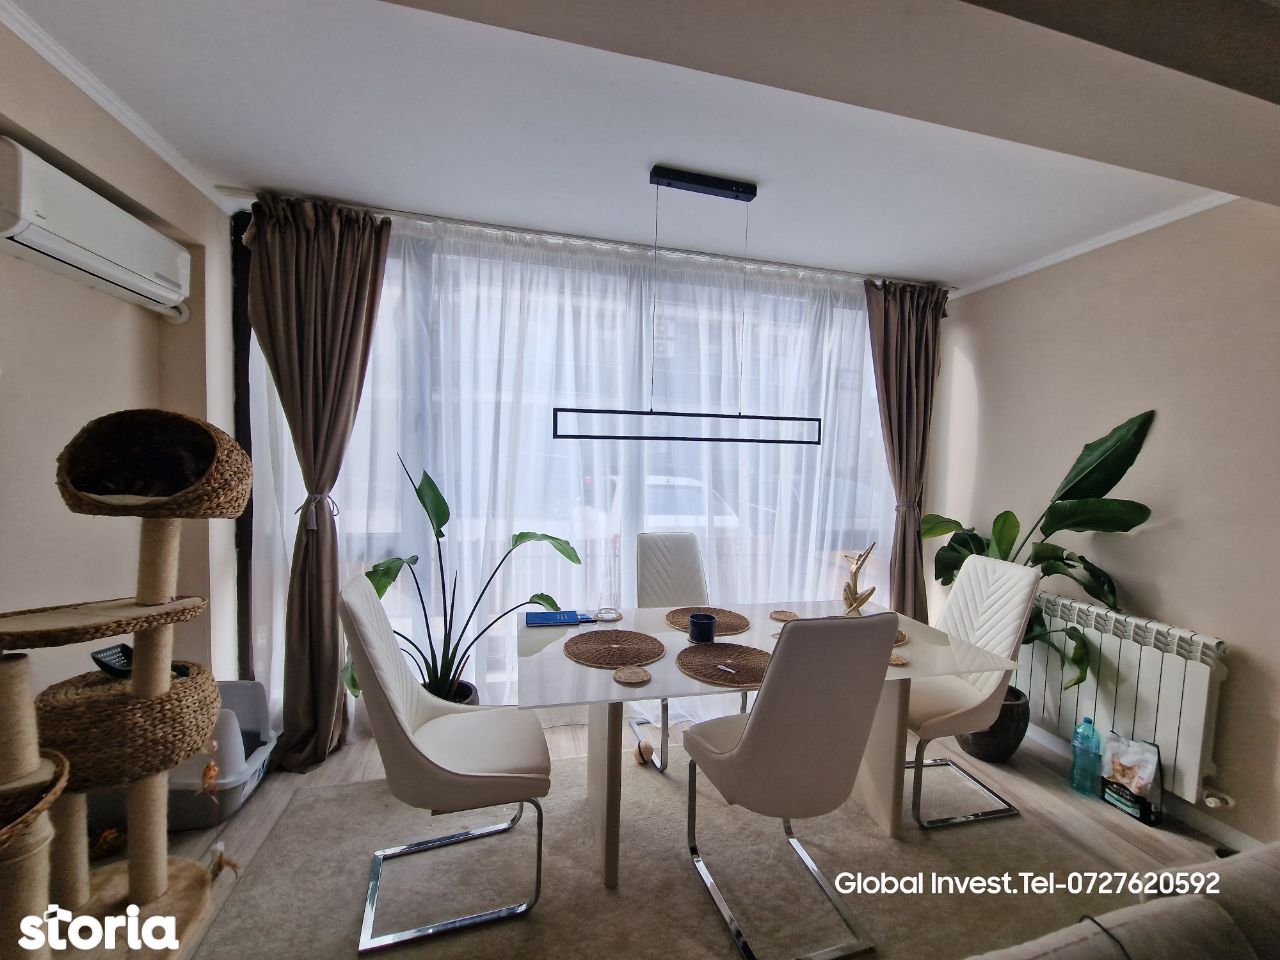 Mamaia Nord - Apartament 3 Camere 100mp, confort Lux, mobilat complet,